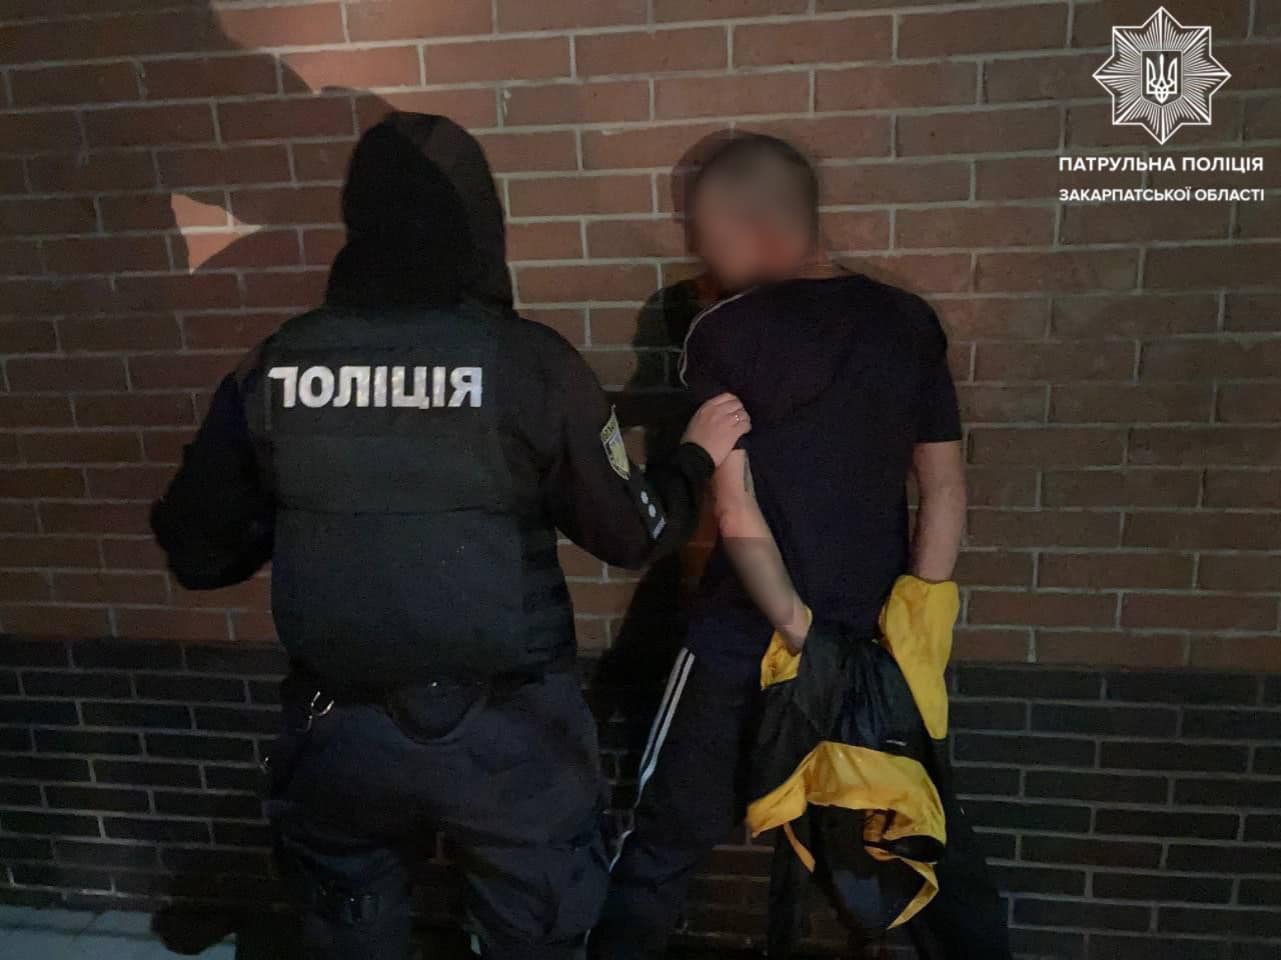 Сьогодні, 13 липня, у Мукачеві патрульні виявили чоловіка, який мав із собою речовини, схожі на наркотичні.